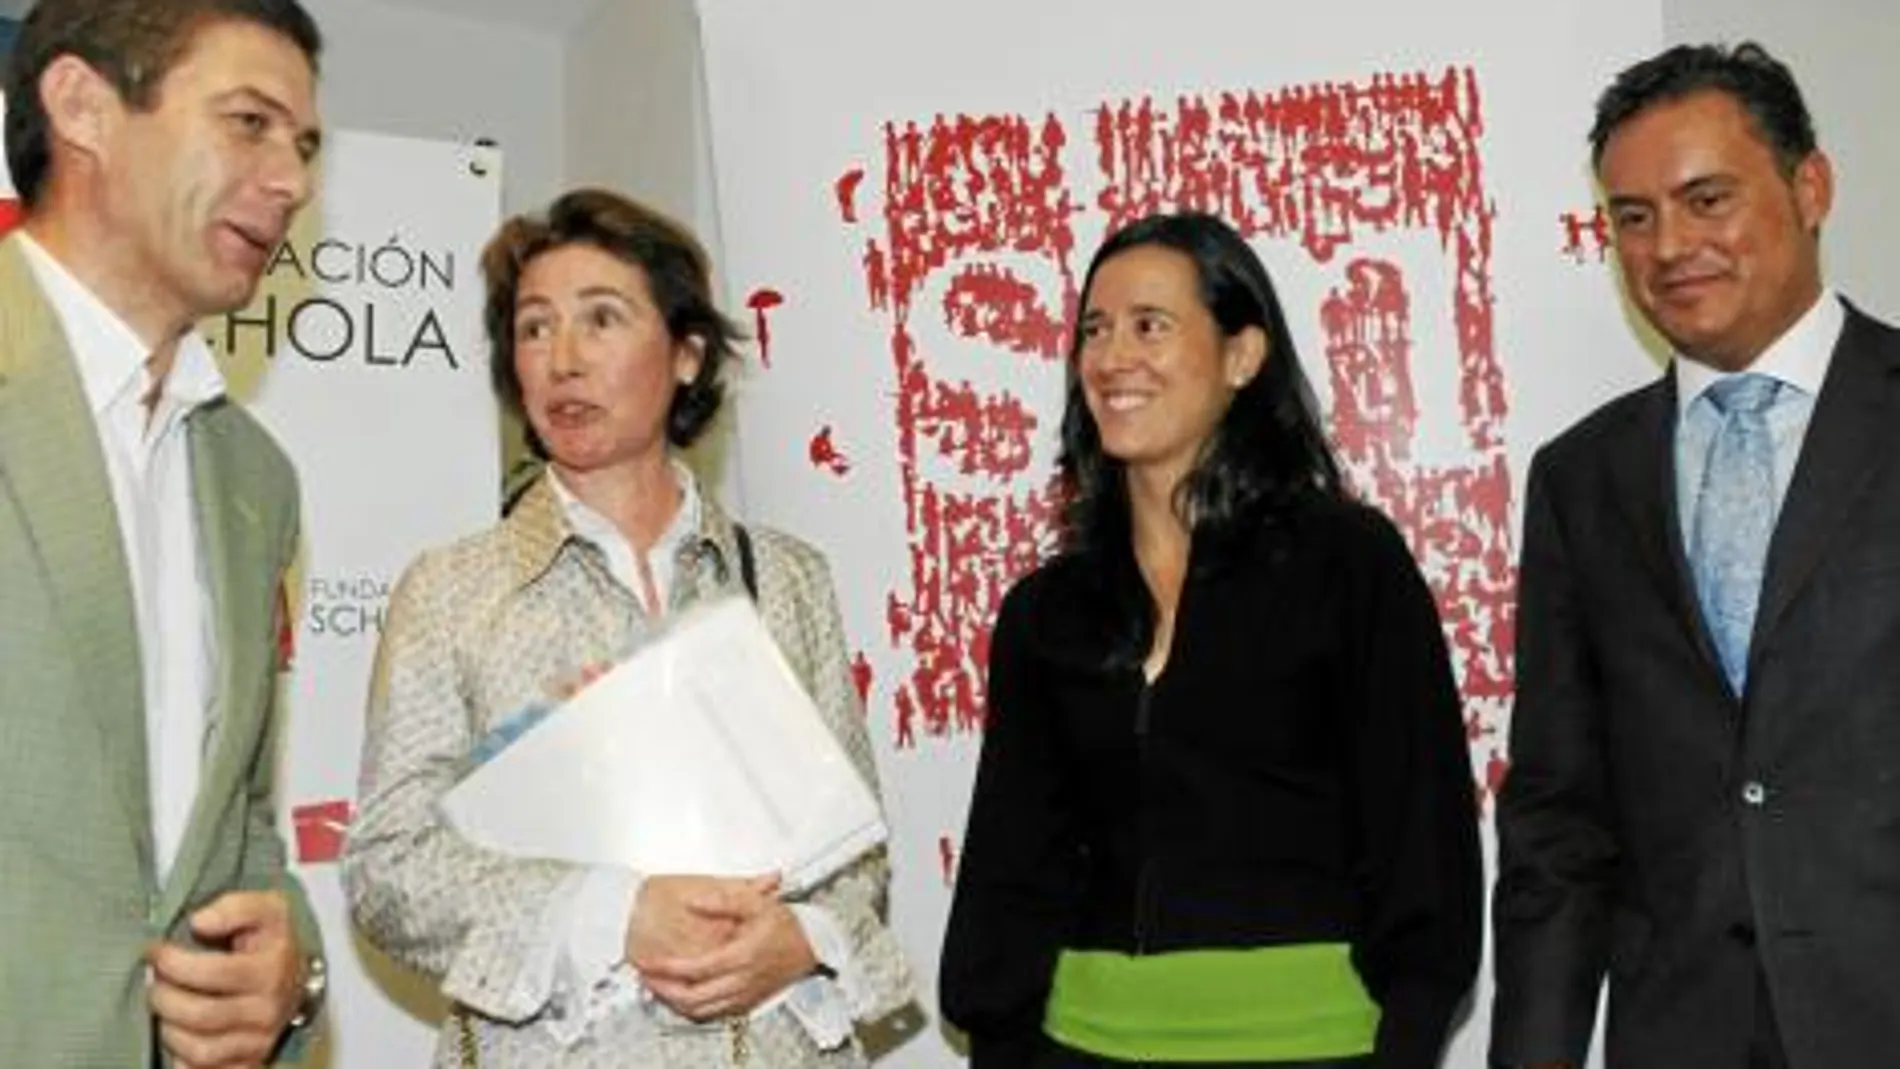 Los conferenciantes María Parrilla y Ángel Hernández junto a Pilar González y el director gerente de Schola, Luis Ortiz de Lanzagorta